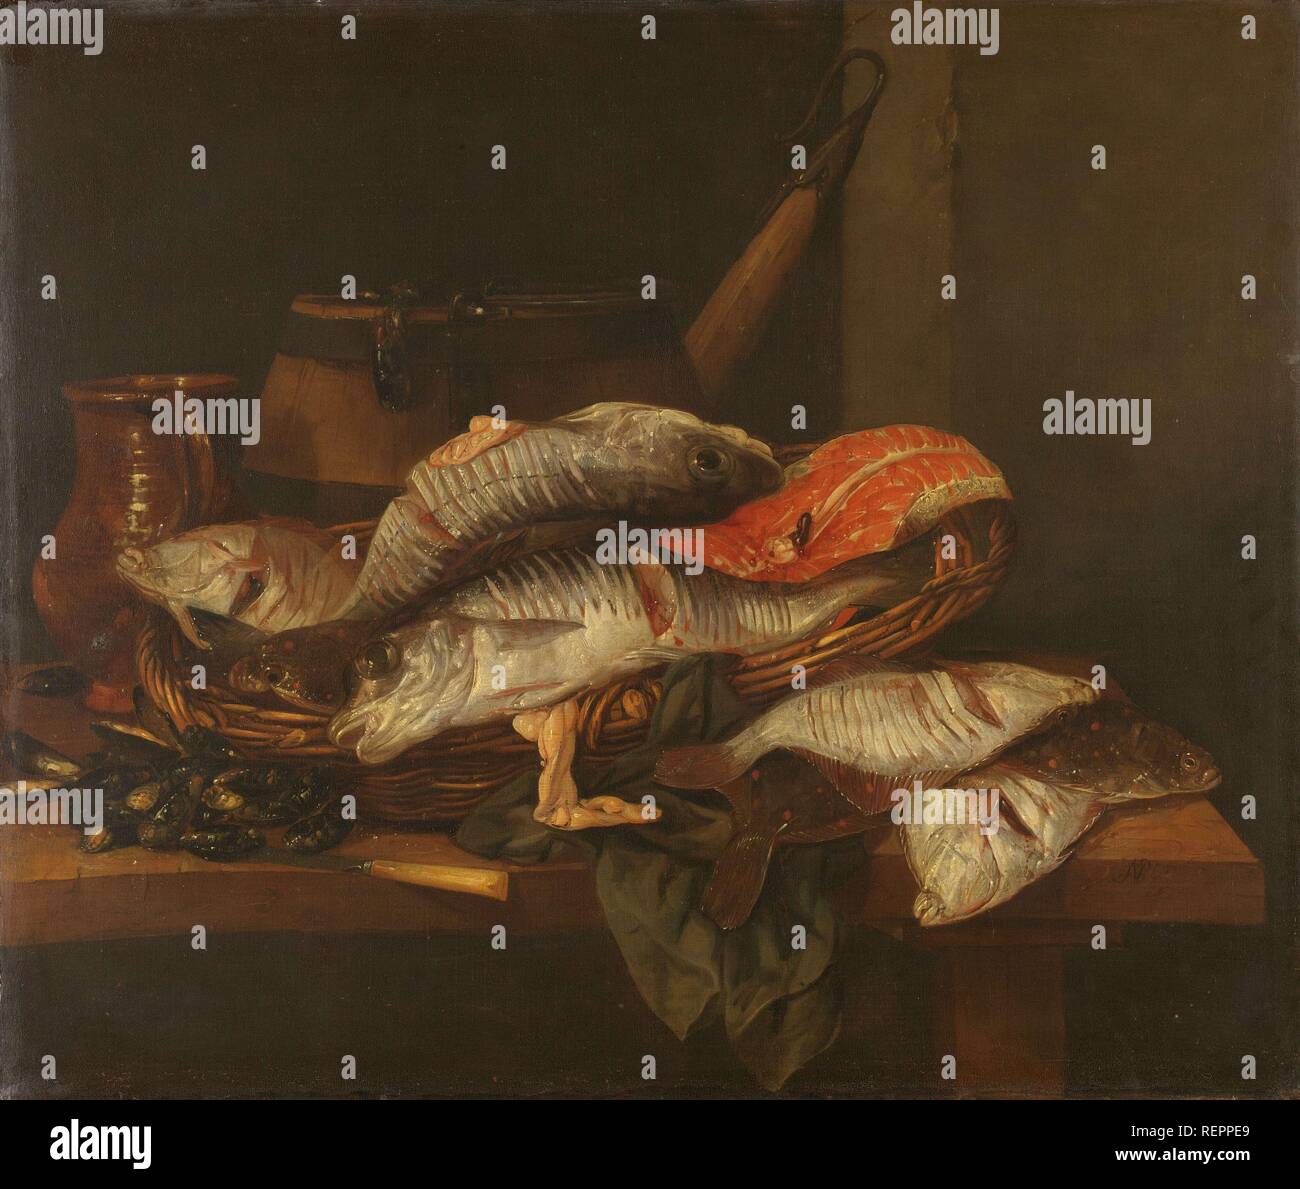 Ancora in vita con il pesce. Dating: c. 1650 - c. 1670. Misurazioni: h 74 cm × W 87 cm; d 8.5 cm. Museo: Rijksmuseum Amsterdam. Autore: Abraham Hendricksz. Van Beyeren. Foto Stock